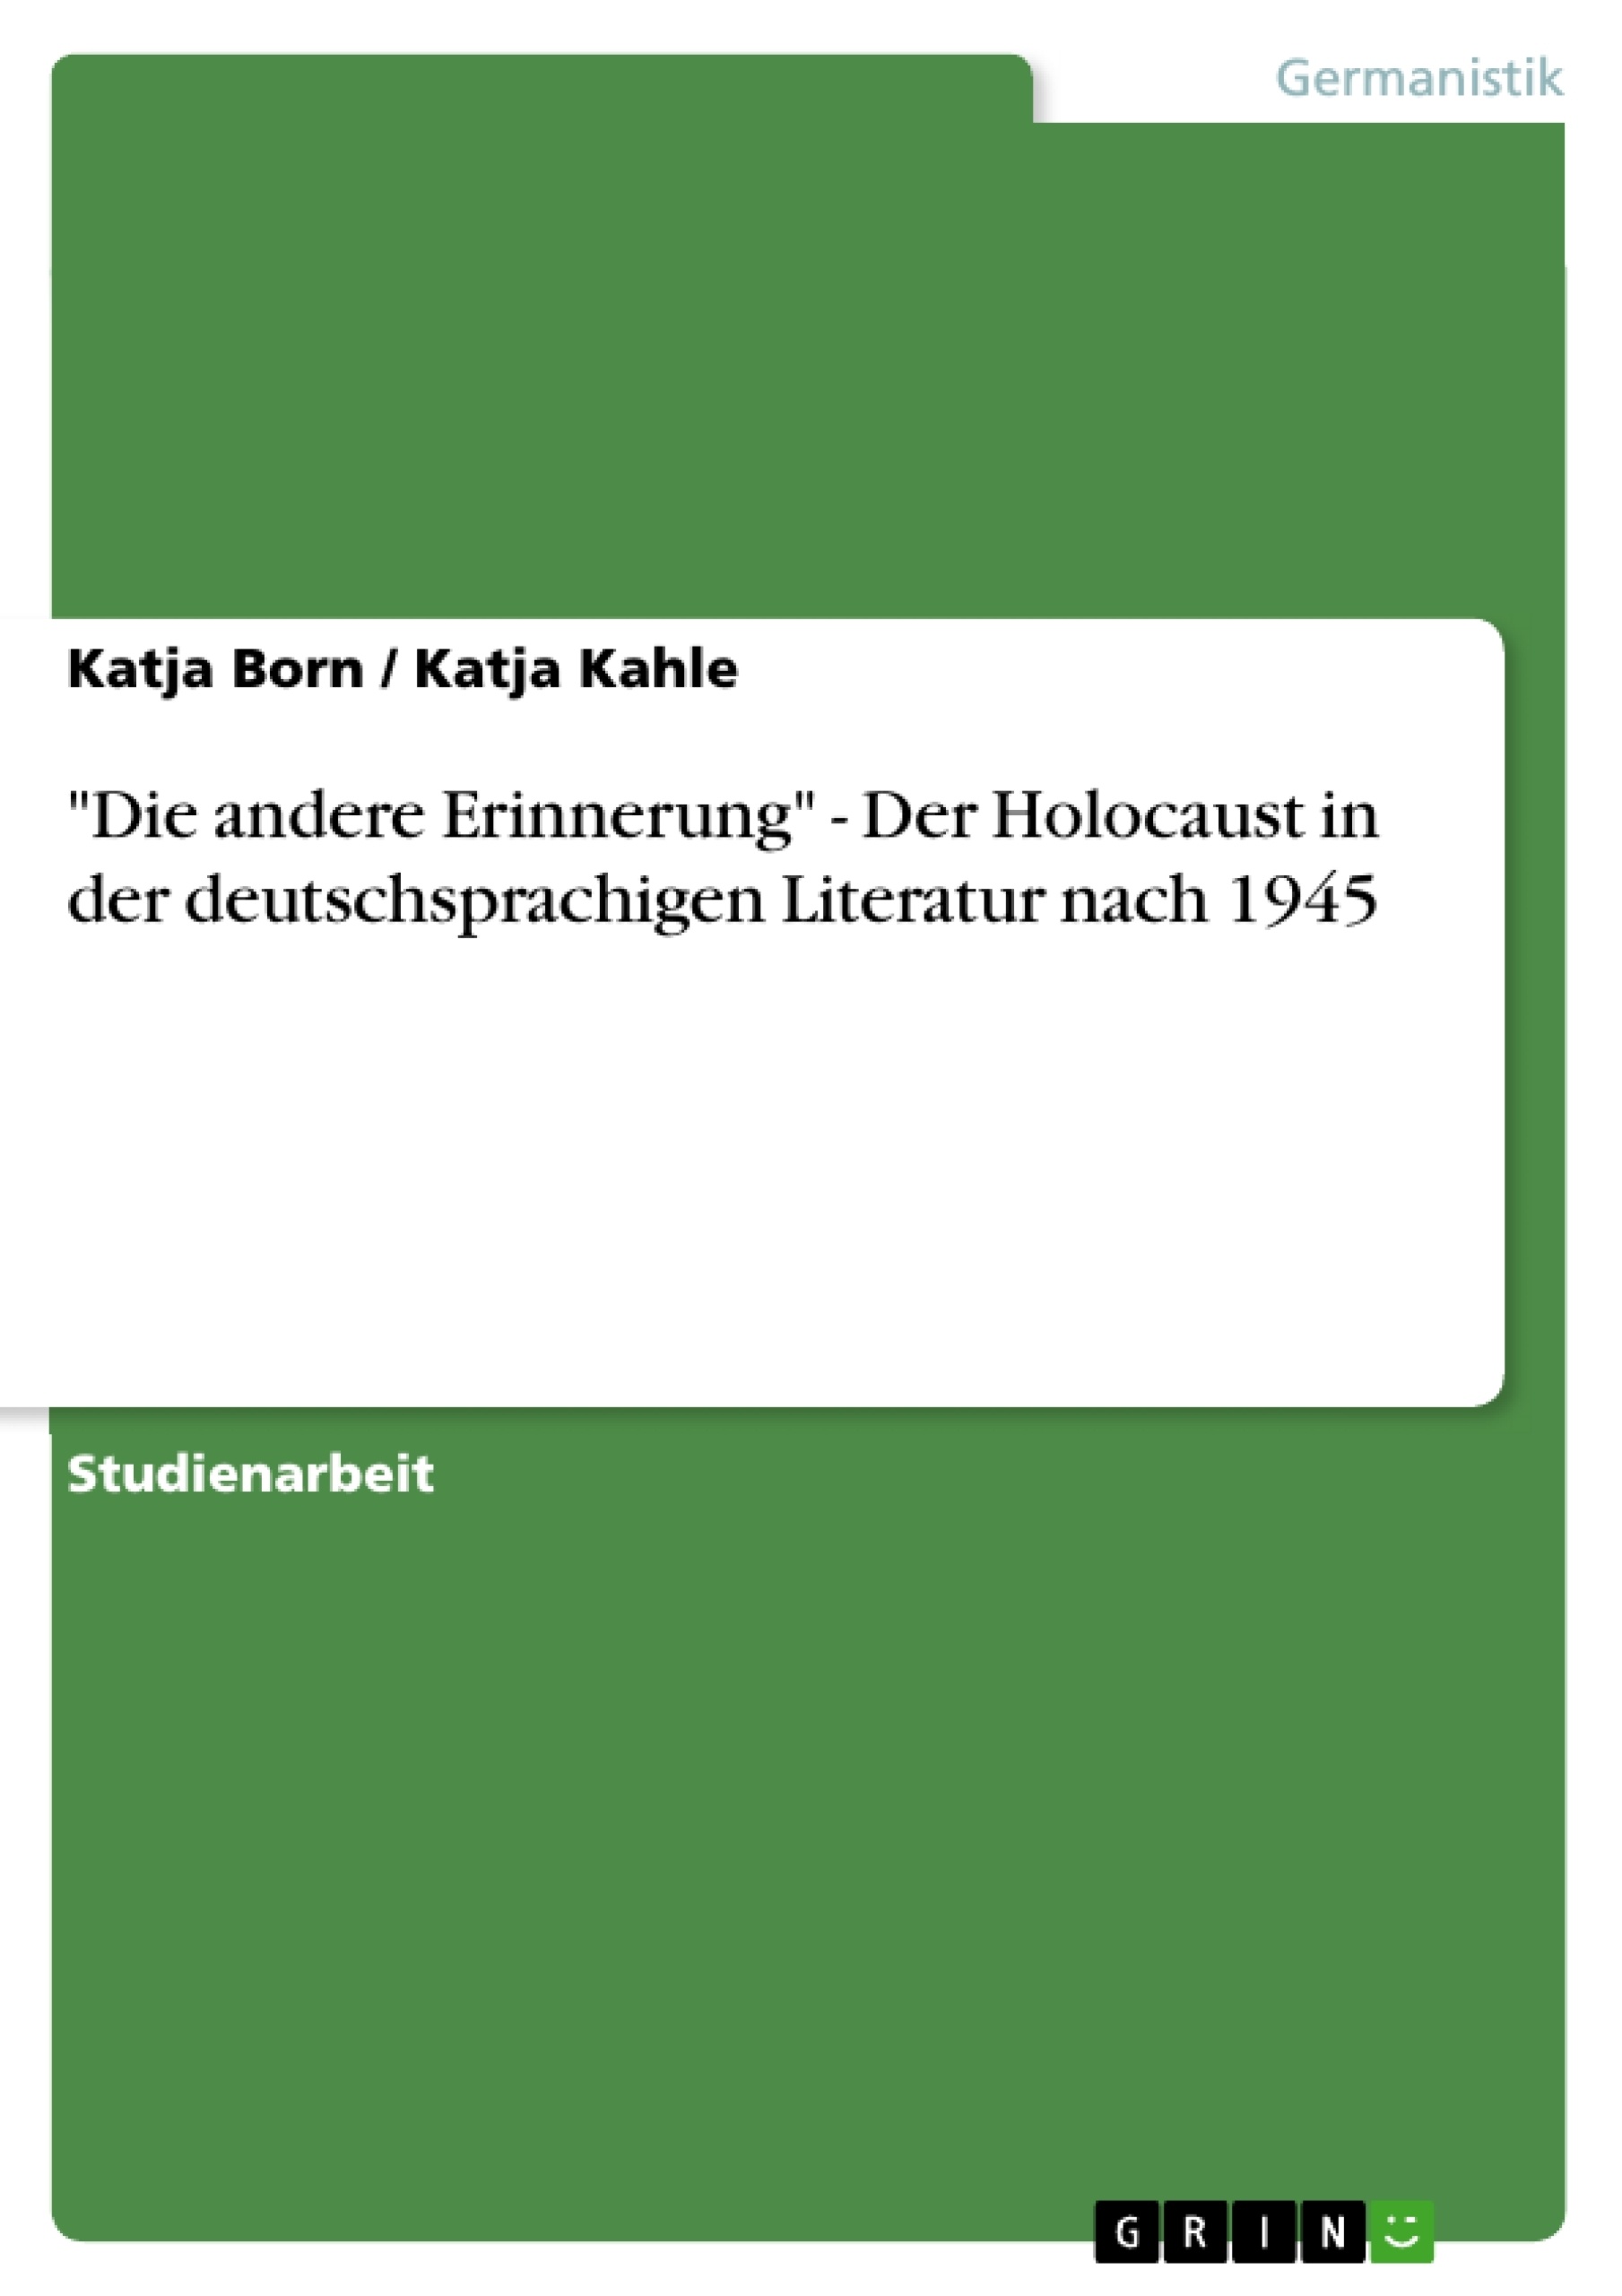 Título: "Die andere Erinnerung" - Der Holocaust in der deutschsprachigen Literatur nach 1945